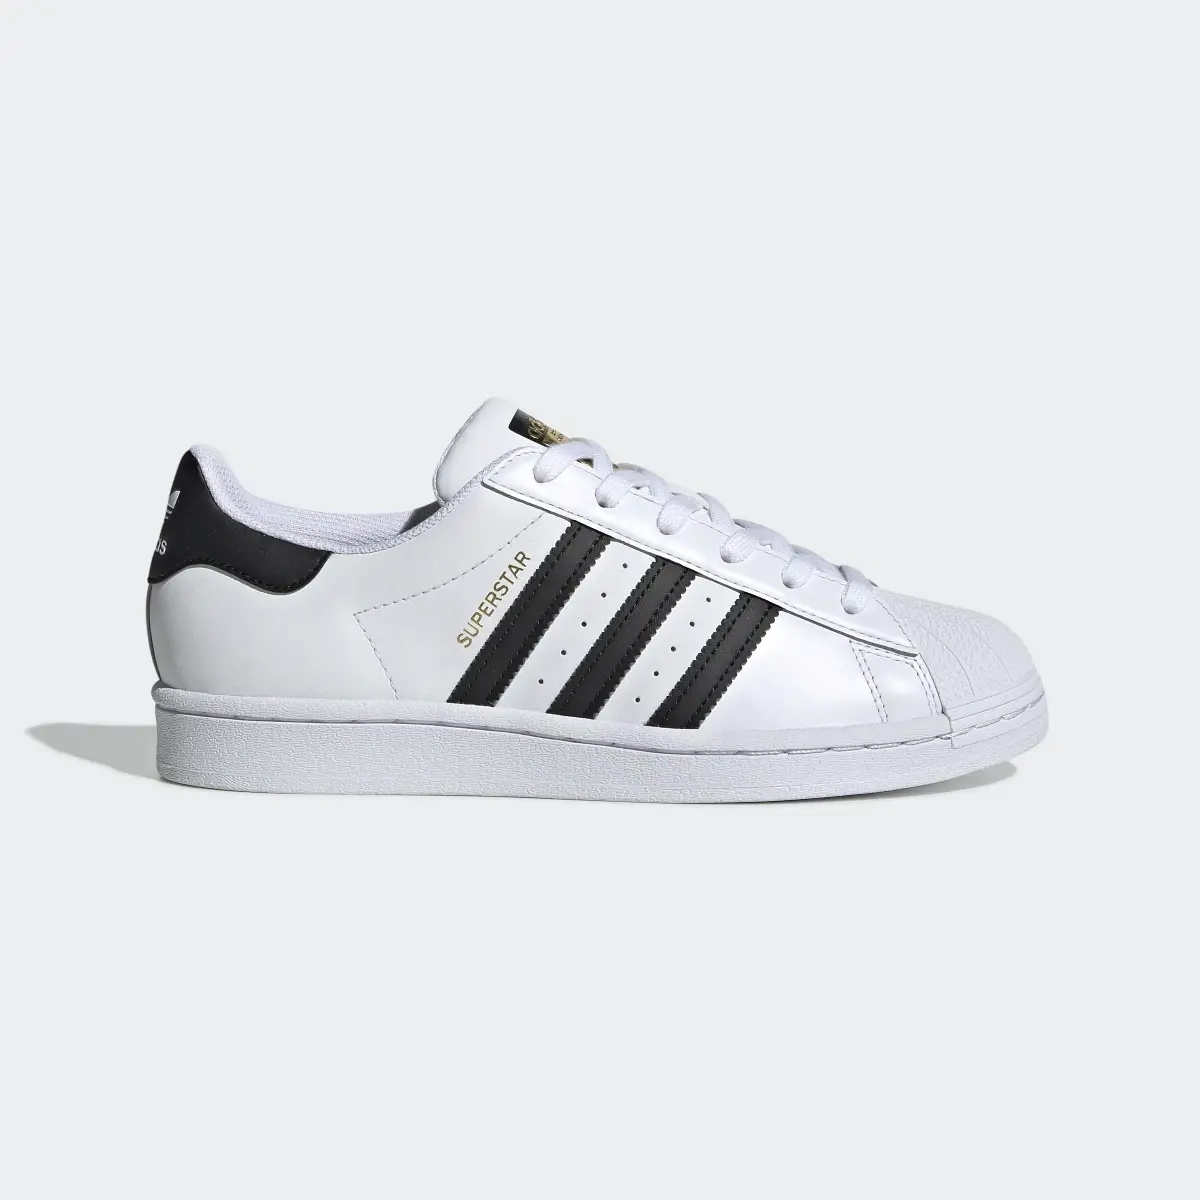 Adidas Superstar Ayakkabı. 2